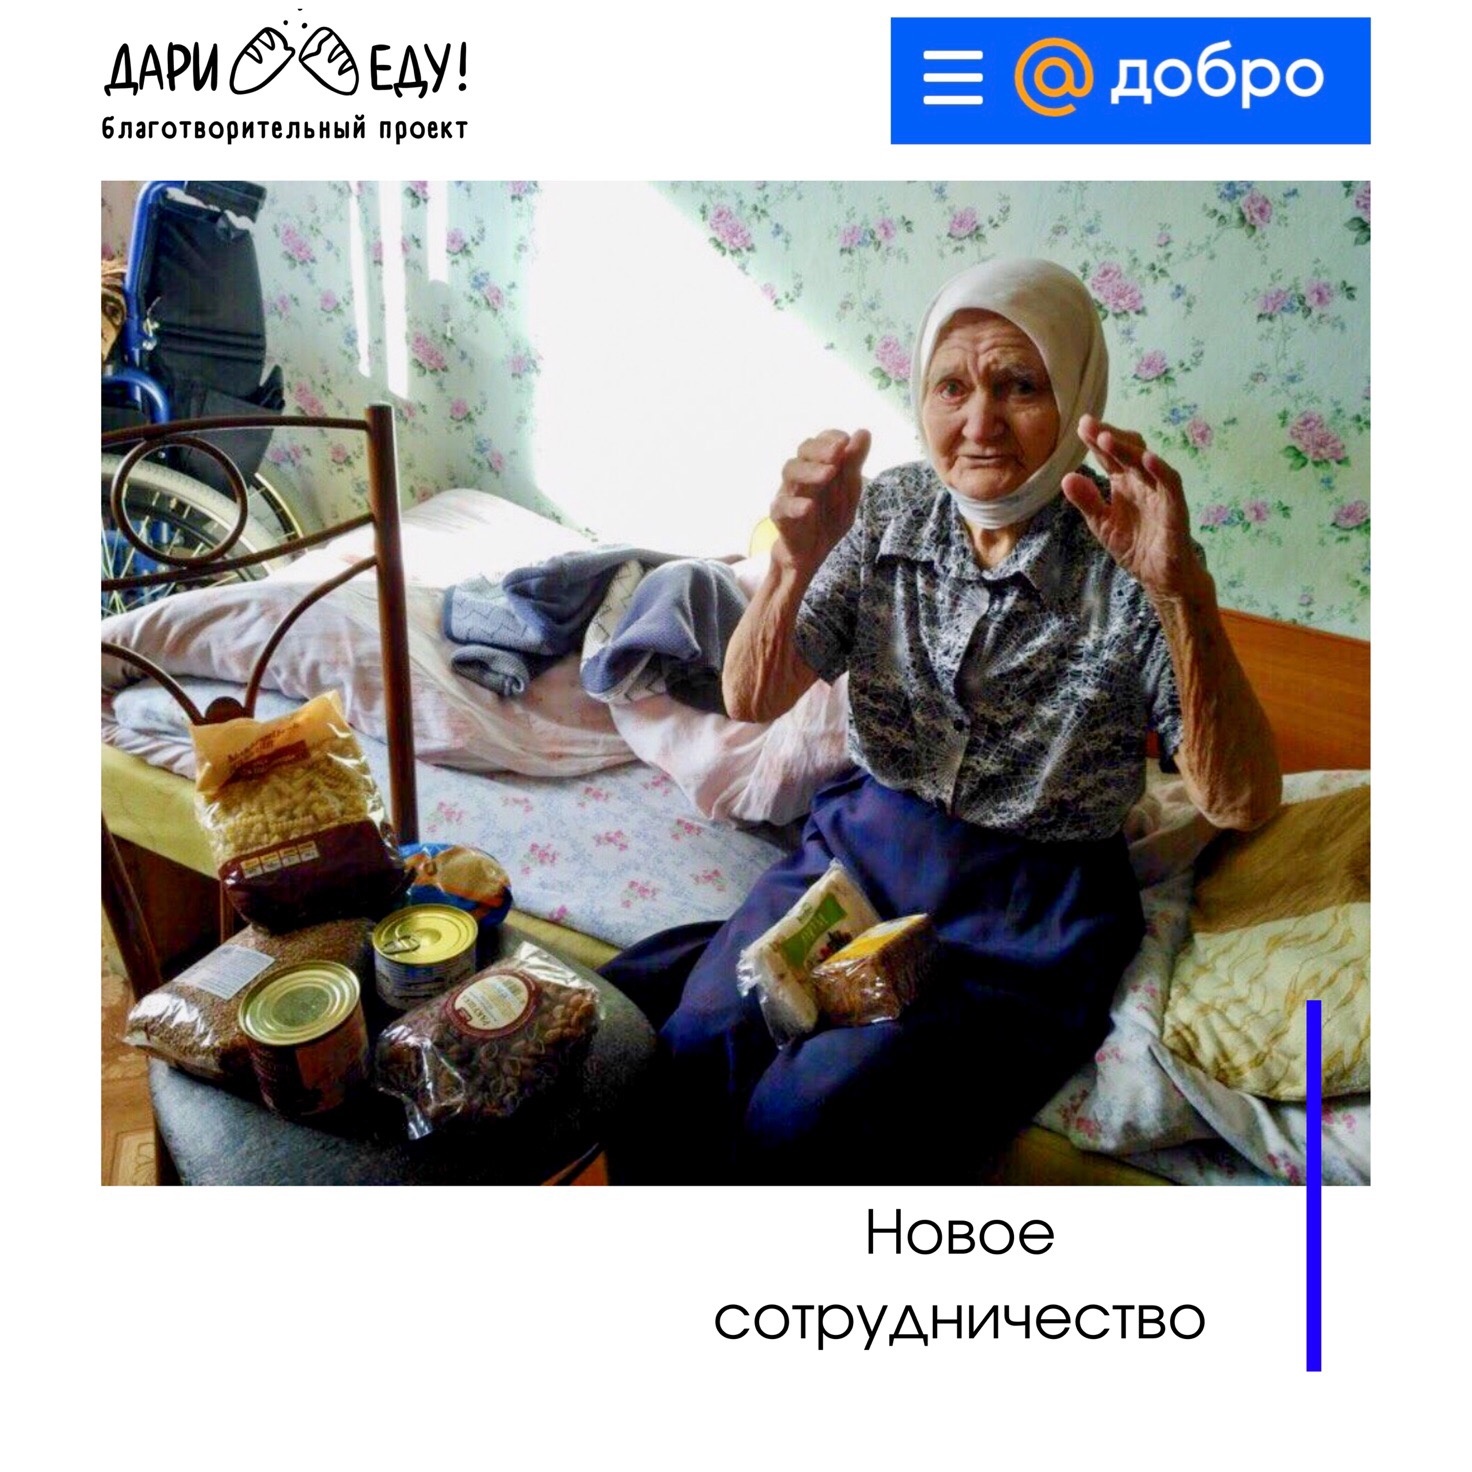 report_2019-druzya-hotim-podelitsya-s-vami-horoshey-novostyu-nash-proekt-poyavilsya-na-ploschadke-dobro-mail-ru_20190913160755.jpg